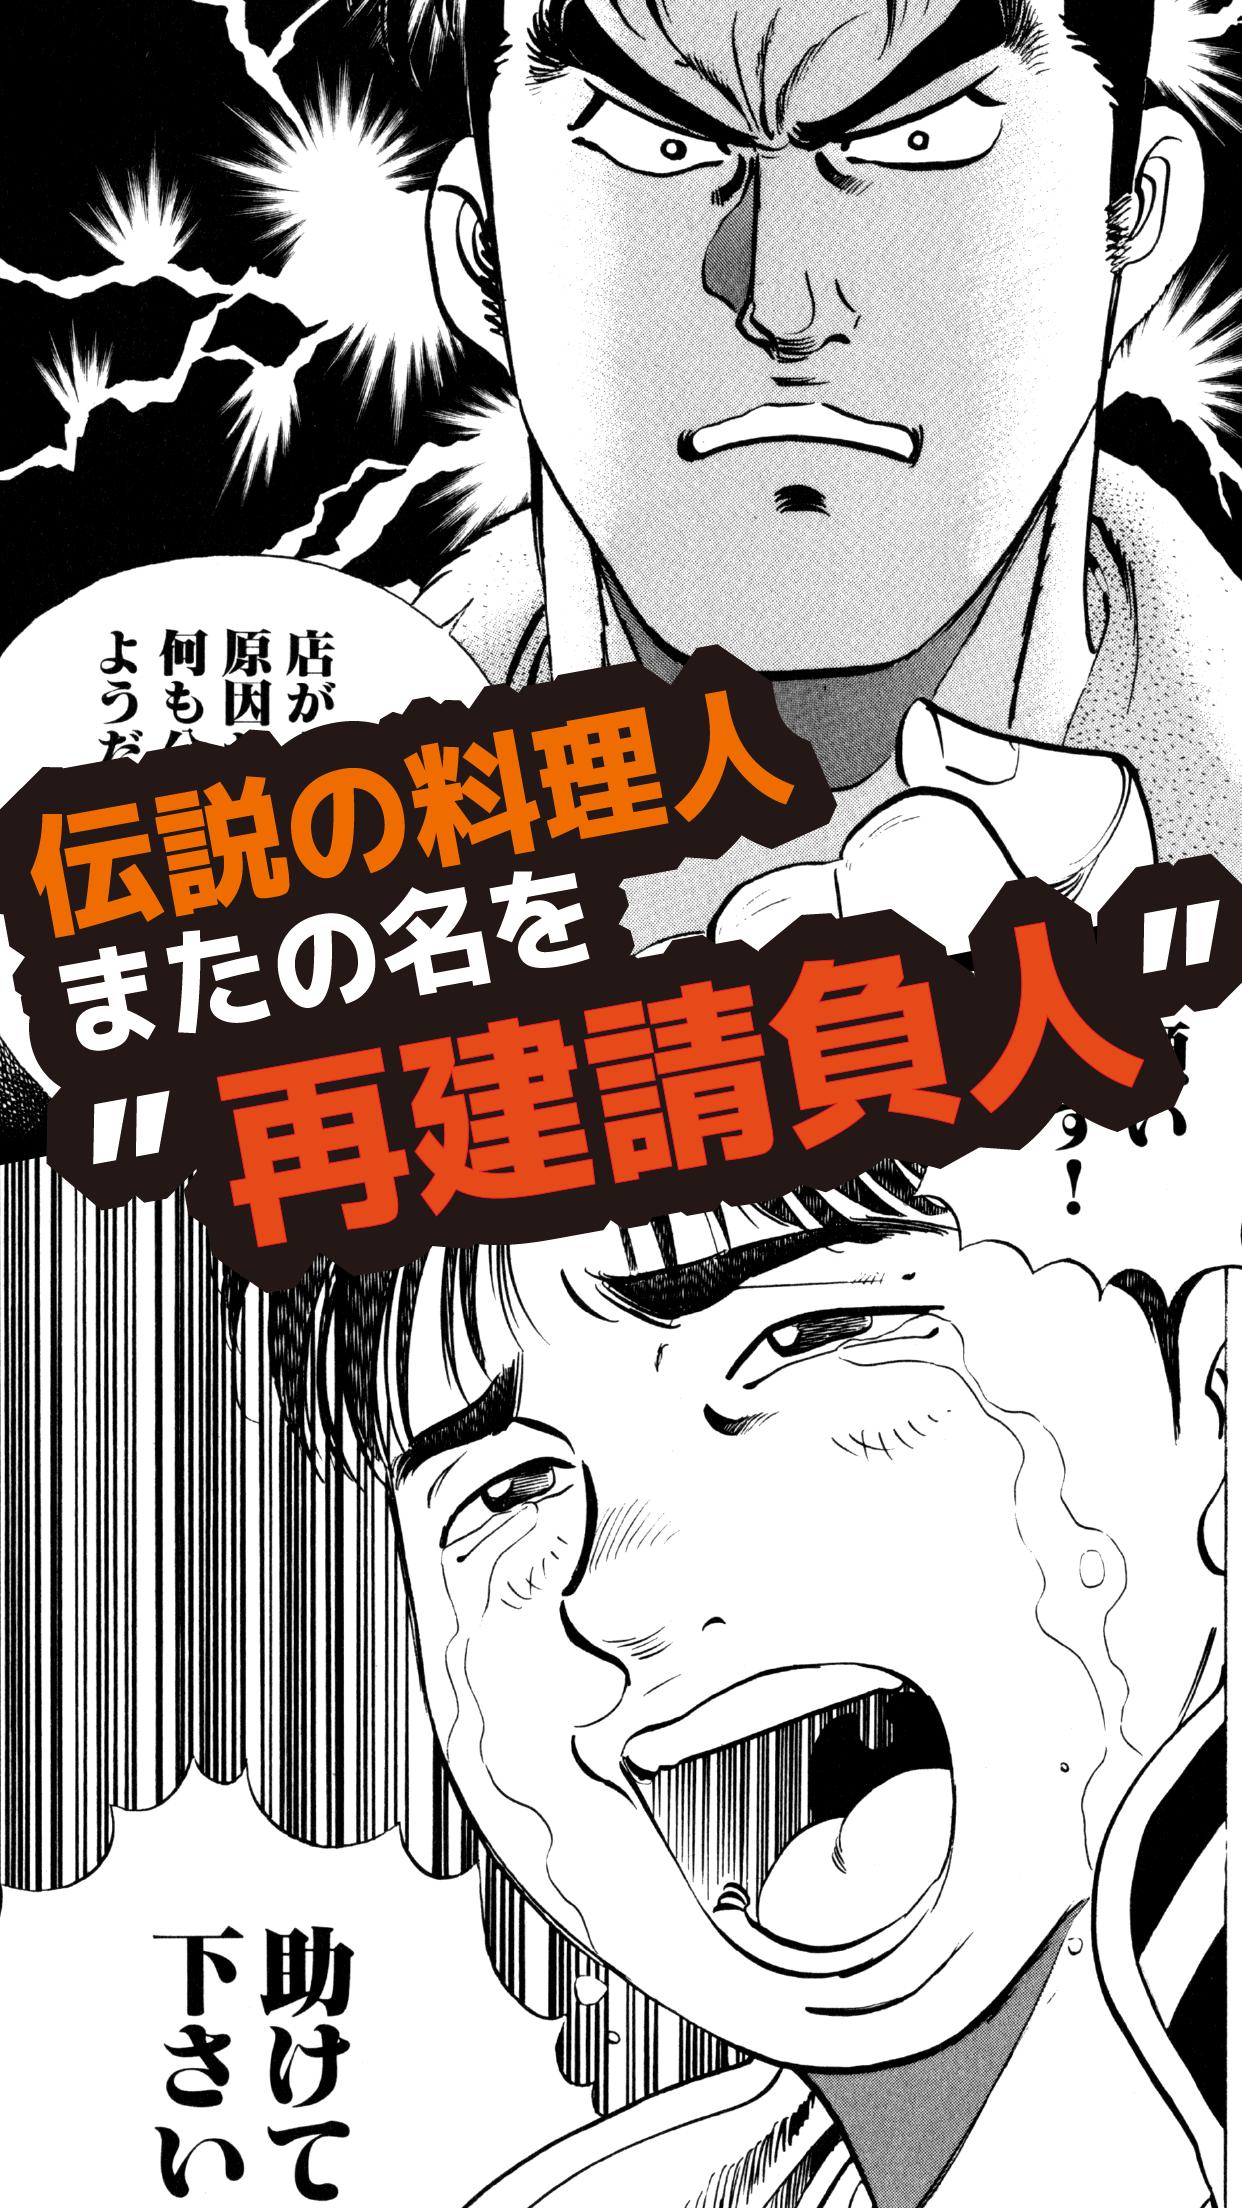 全巻無料 食キング 熱血グルメ人気漫画 マンガ For Android Apk Download